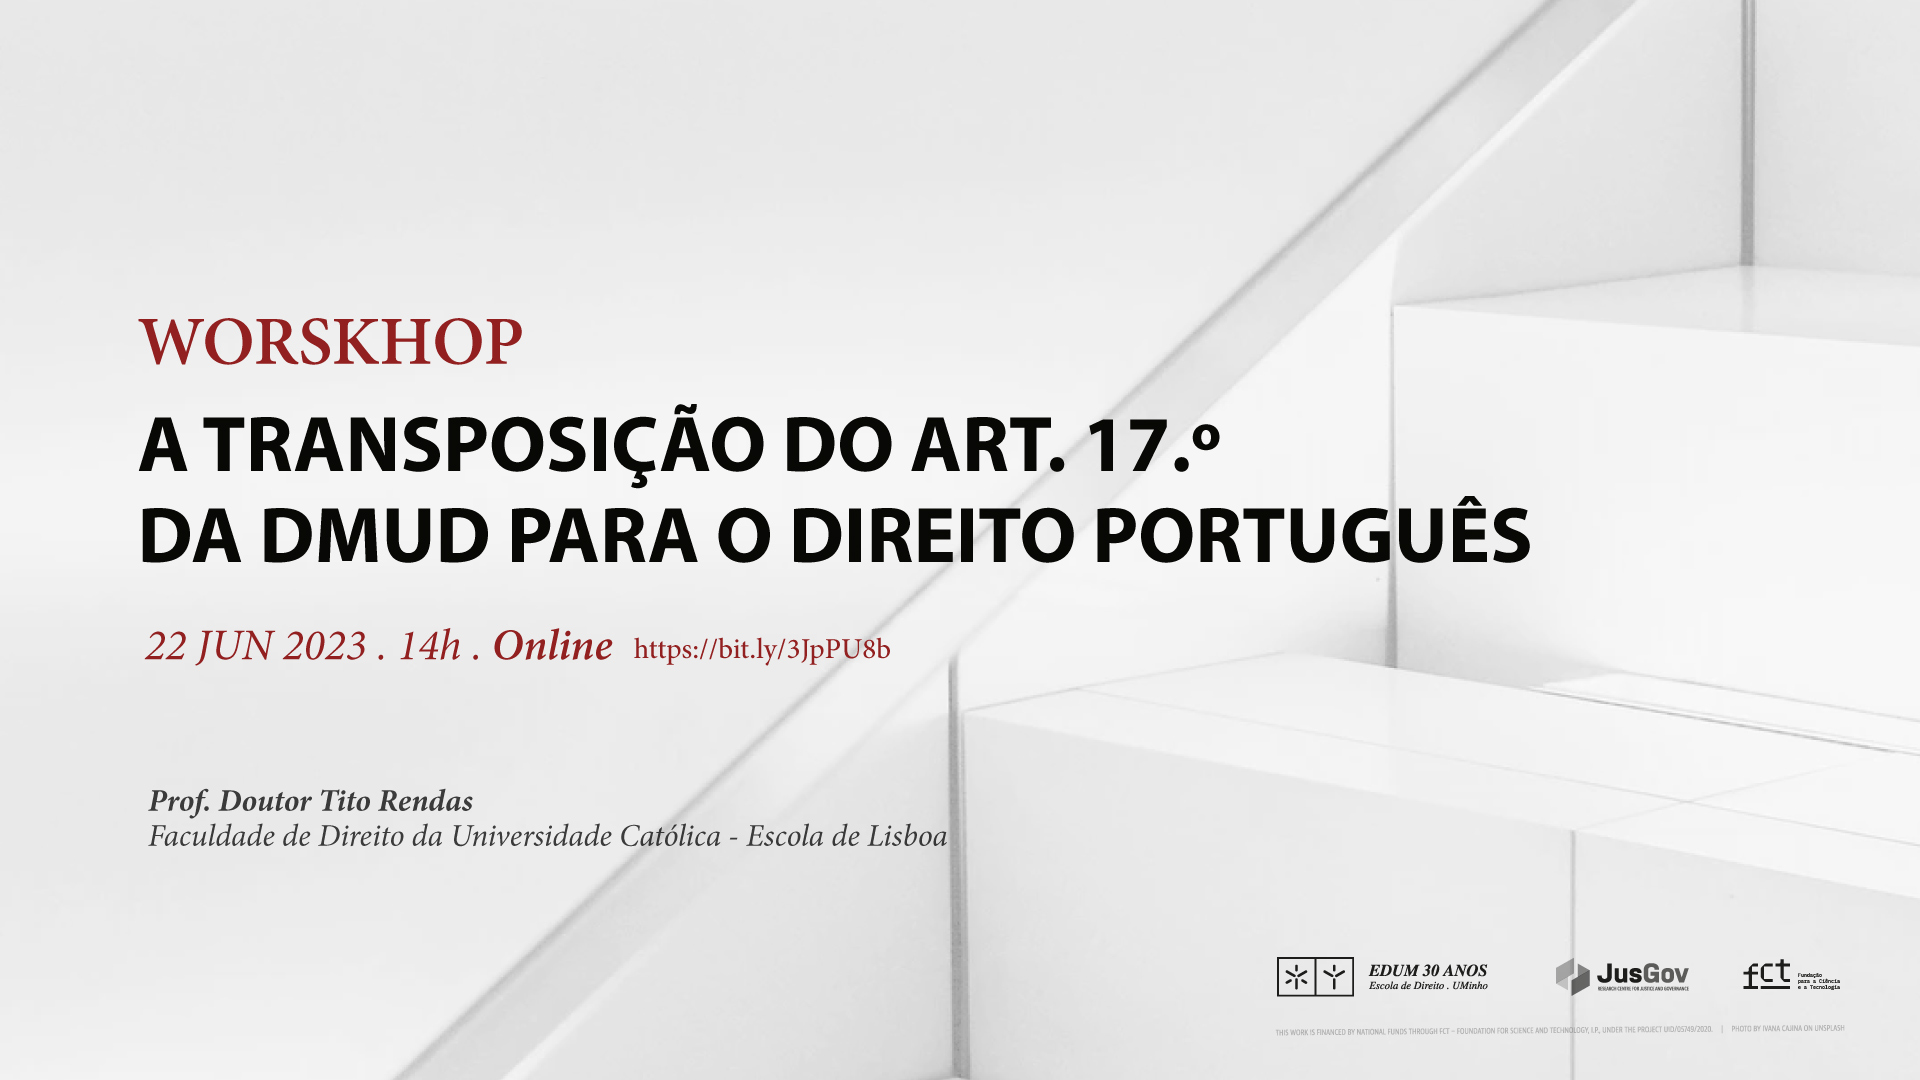 Workshop “A transposição do art. 17.º da DMUD para o direito português” -  JusGov